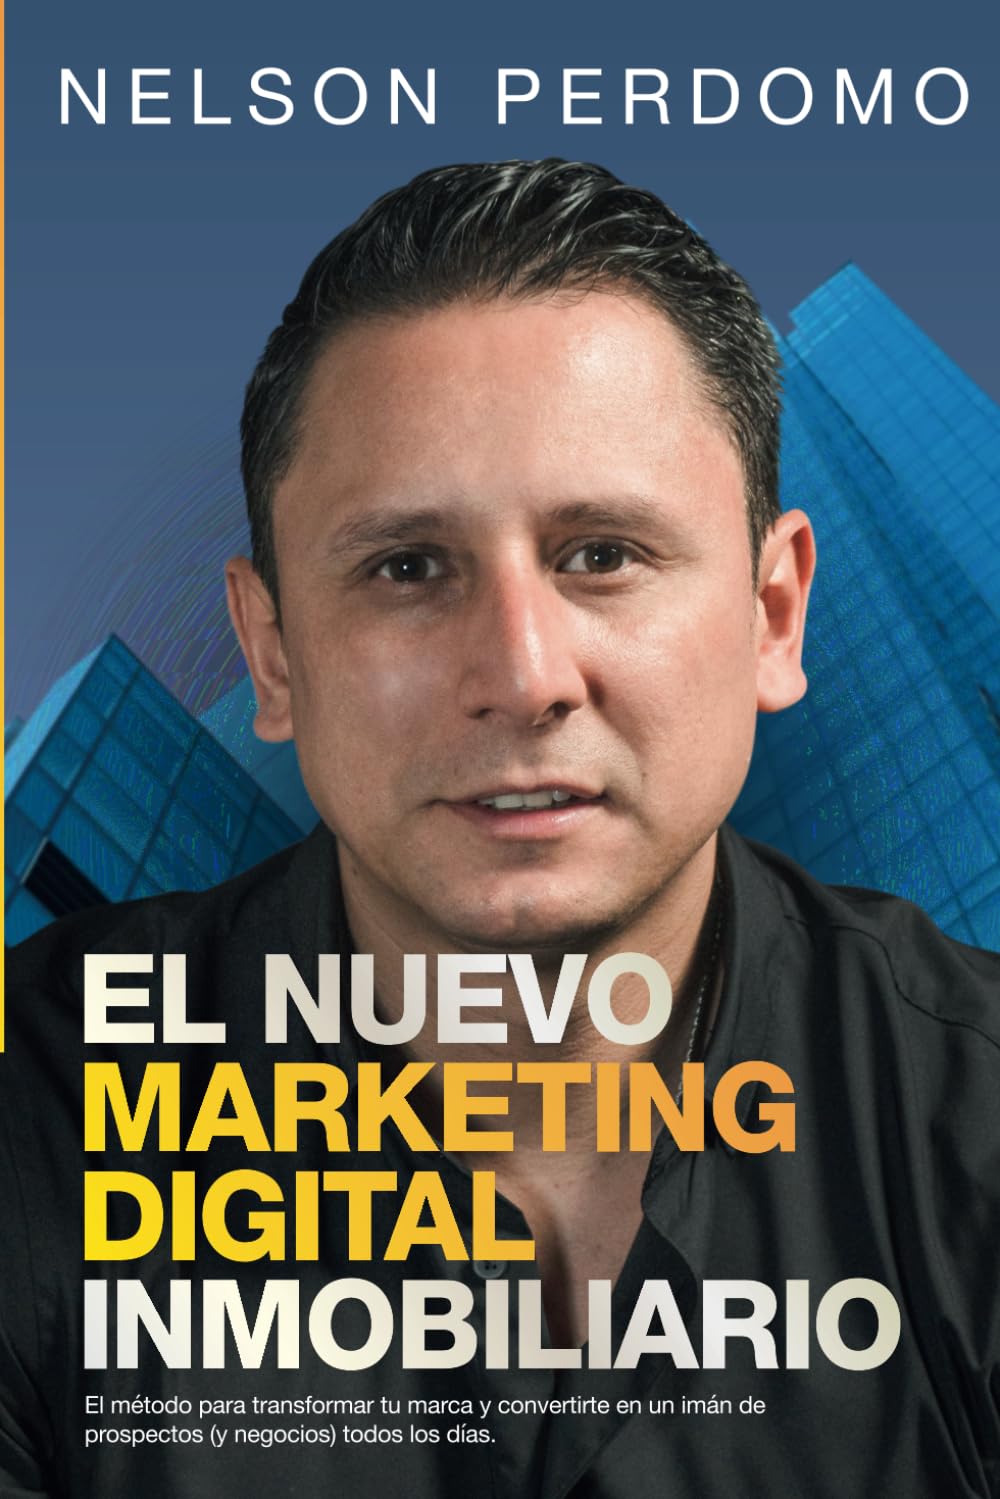 El Nuevo Marketing Digital Inmobiliario: El método para transformar tu marca y convertirte en un imán de prospectos (y negocios) todos los días. (Spanish Edition)